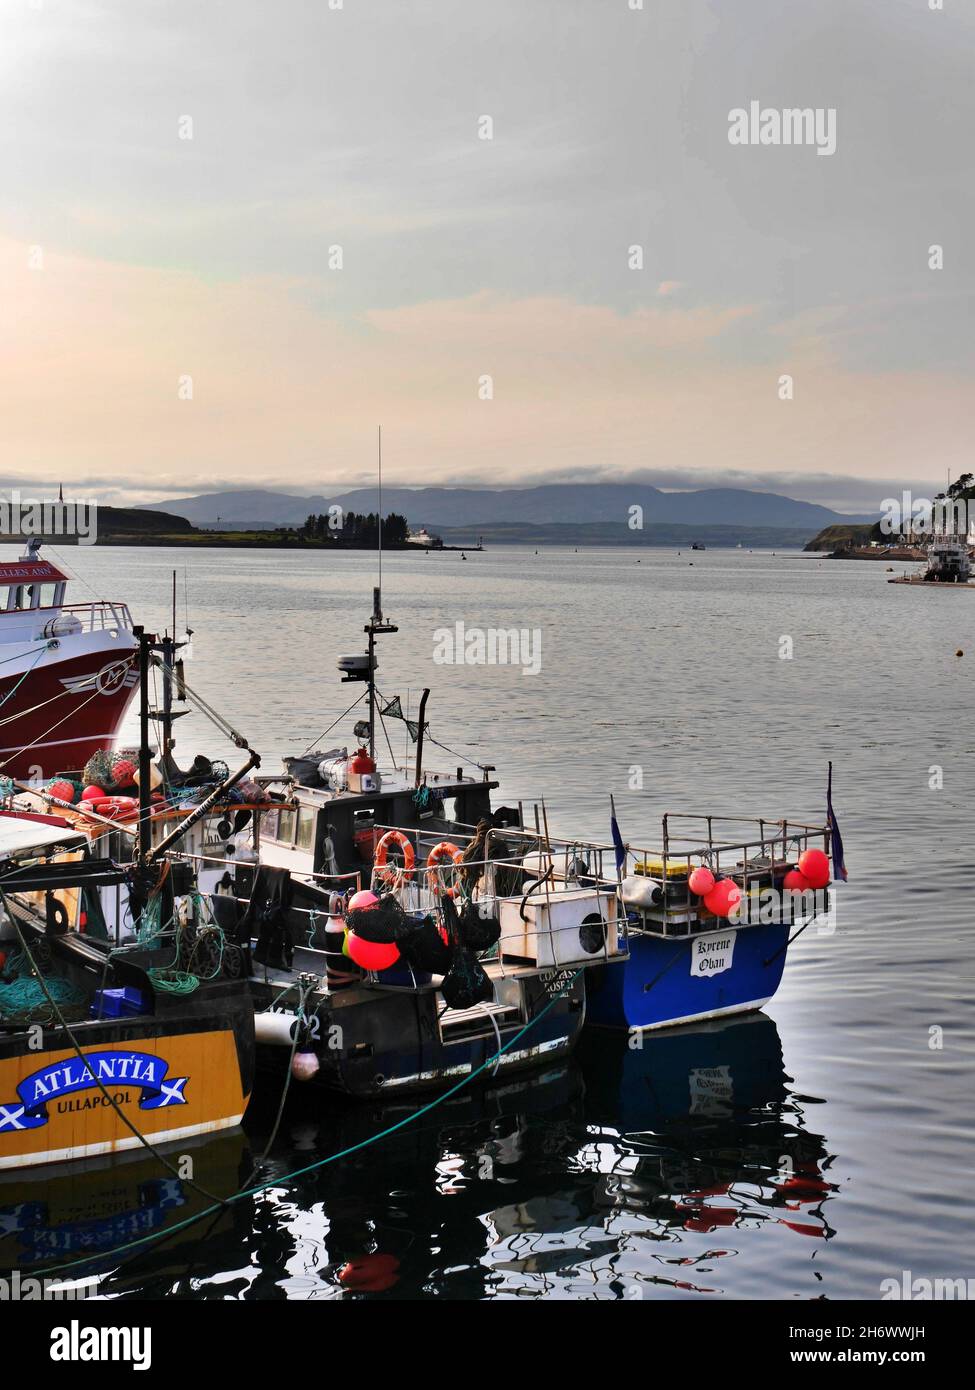 Gros plan de bateaux de pêche colorés à Port, Oban, Écosse Banque D'Images